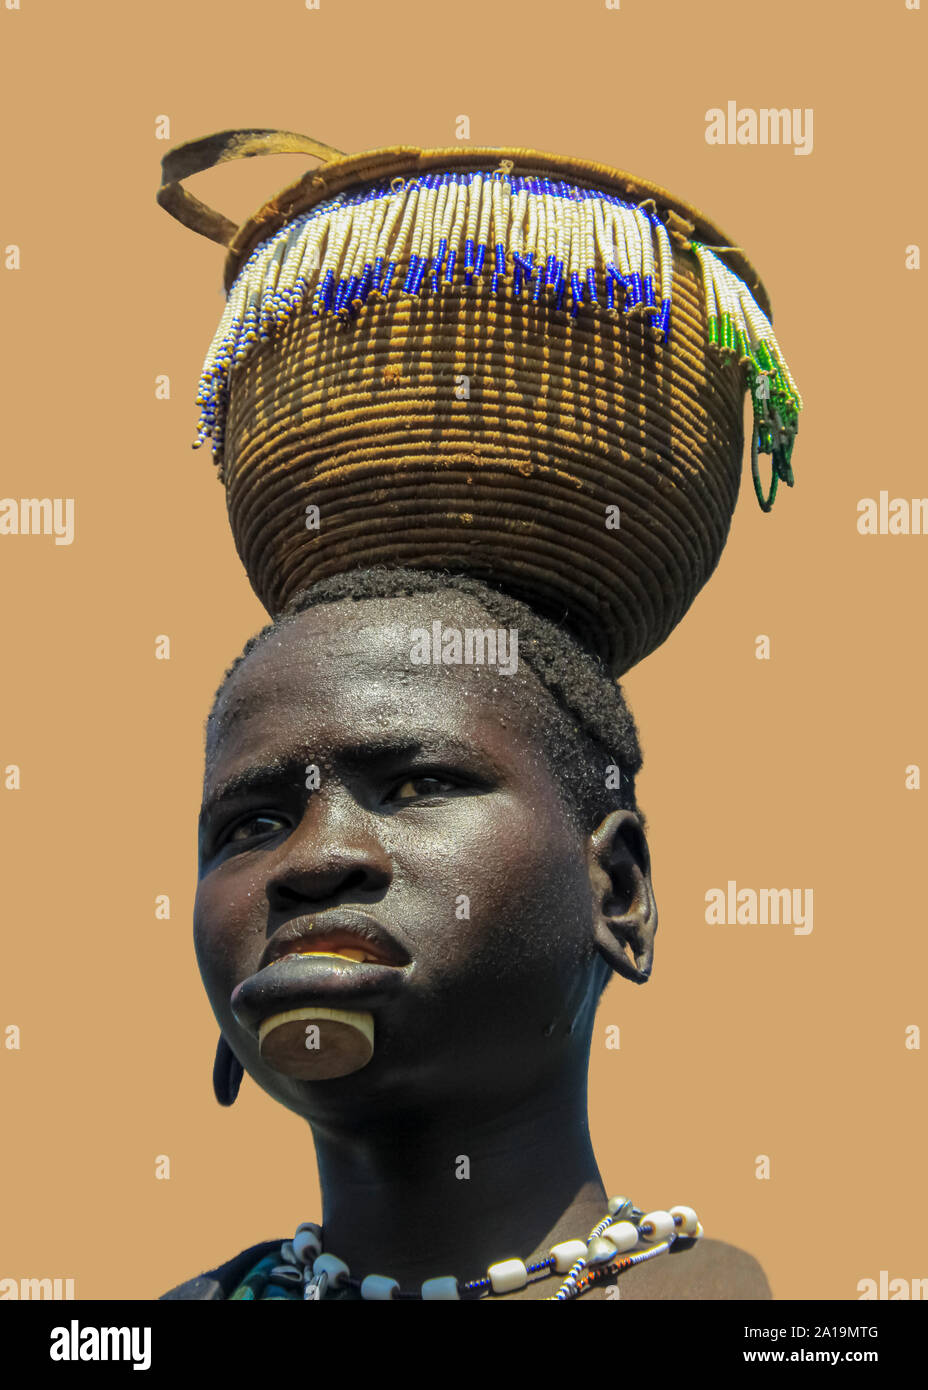 Amélioration de l'image numérique d'une femme de la tribu Mursi. Un groupe ethnique nomade d'éleveurs de bétail situé dans le sud de l'Éthiopie, la femme à la lèvre comme disque d'argile Banque D'Images